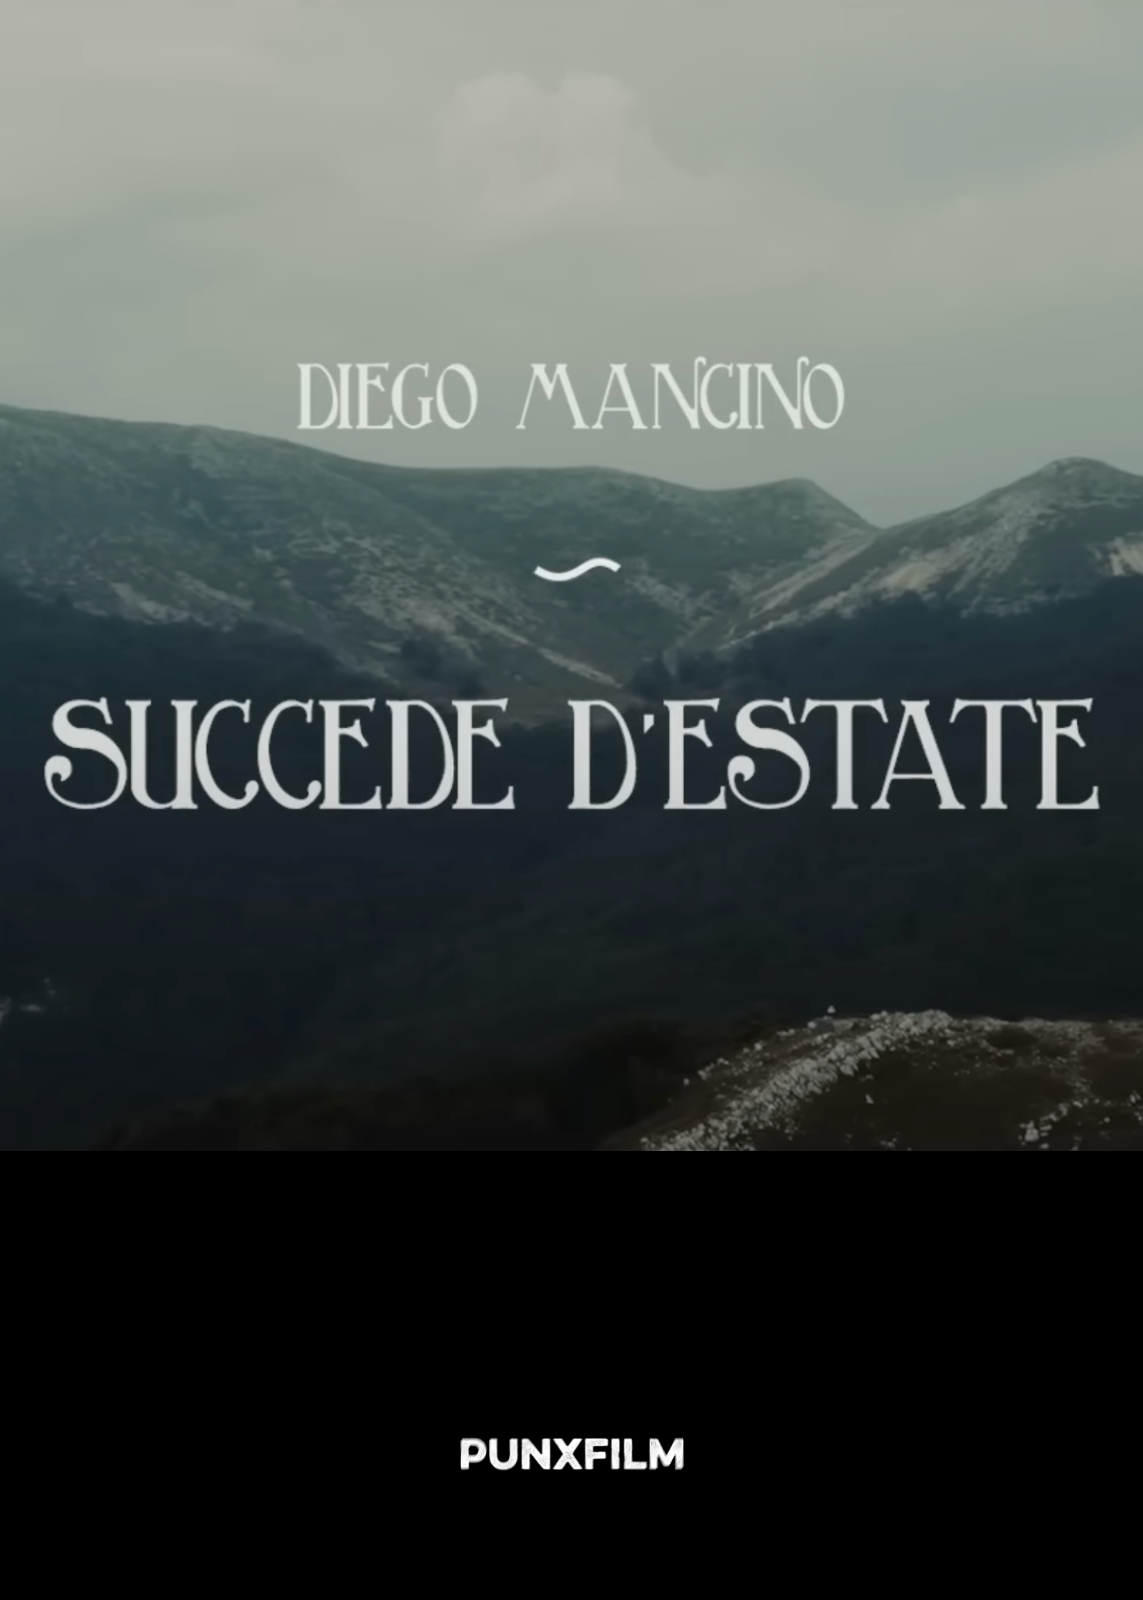 Diego_Mancino_Succede_d'estate_2016